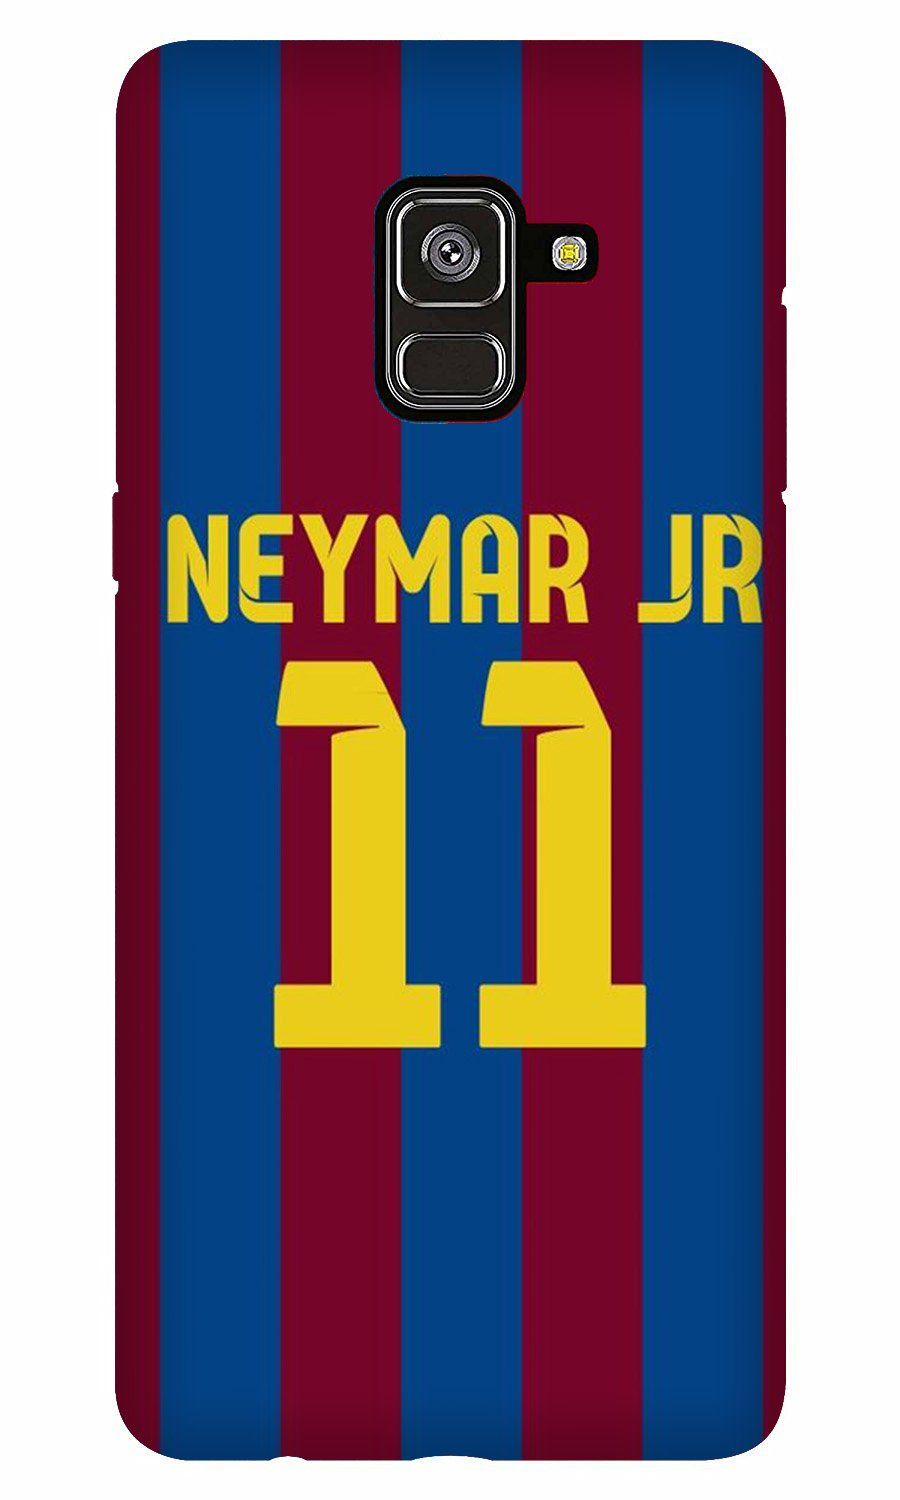 Neymar Jr Case for Galaxy A6(Design - 162)